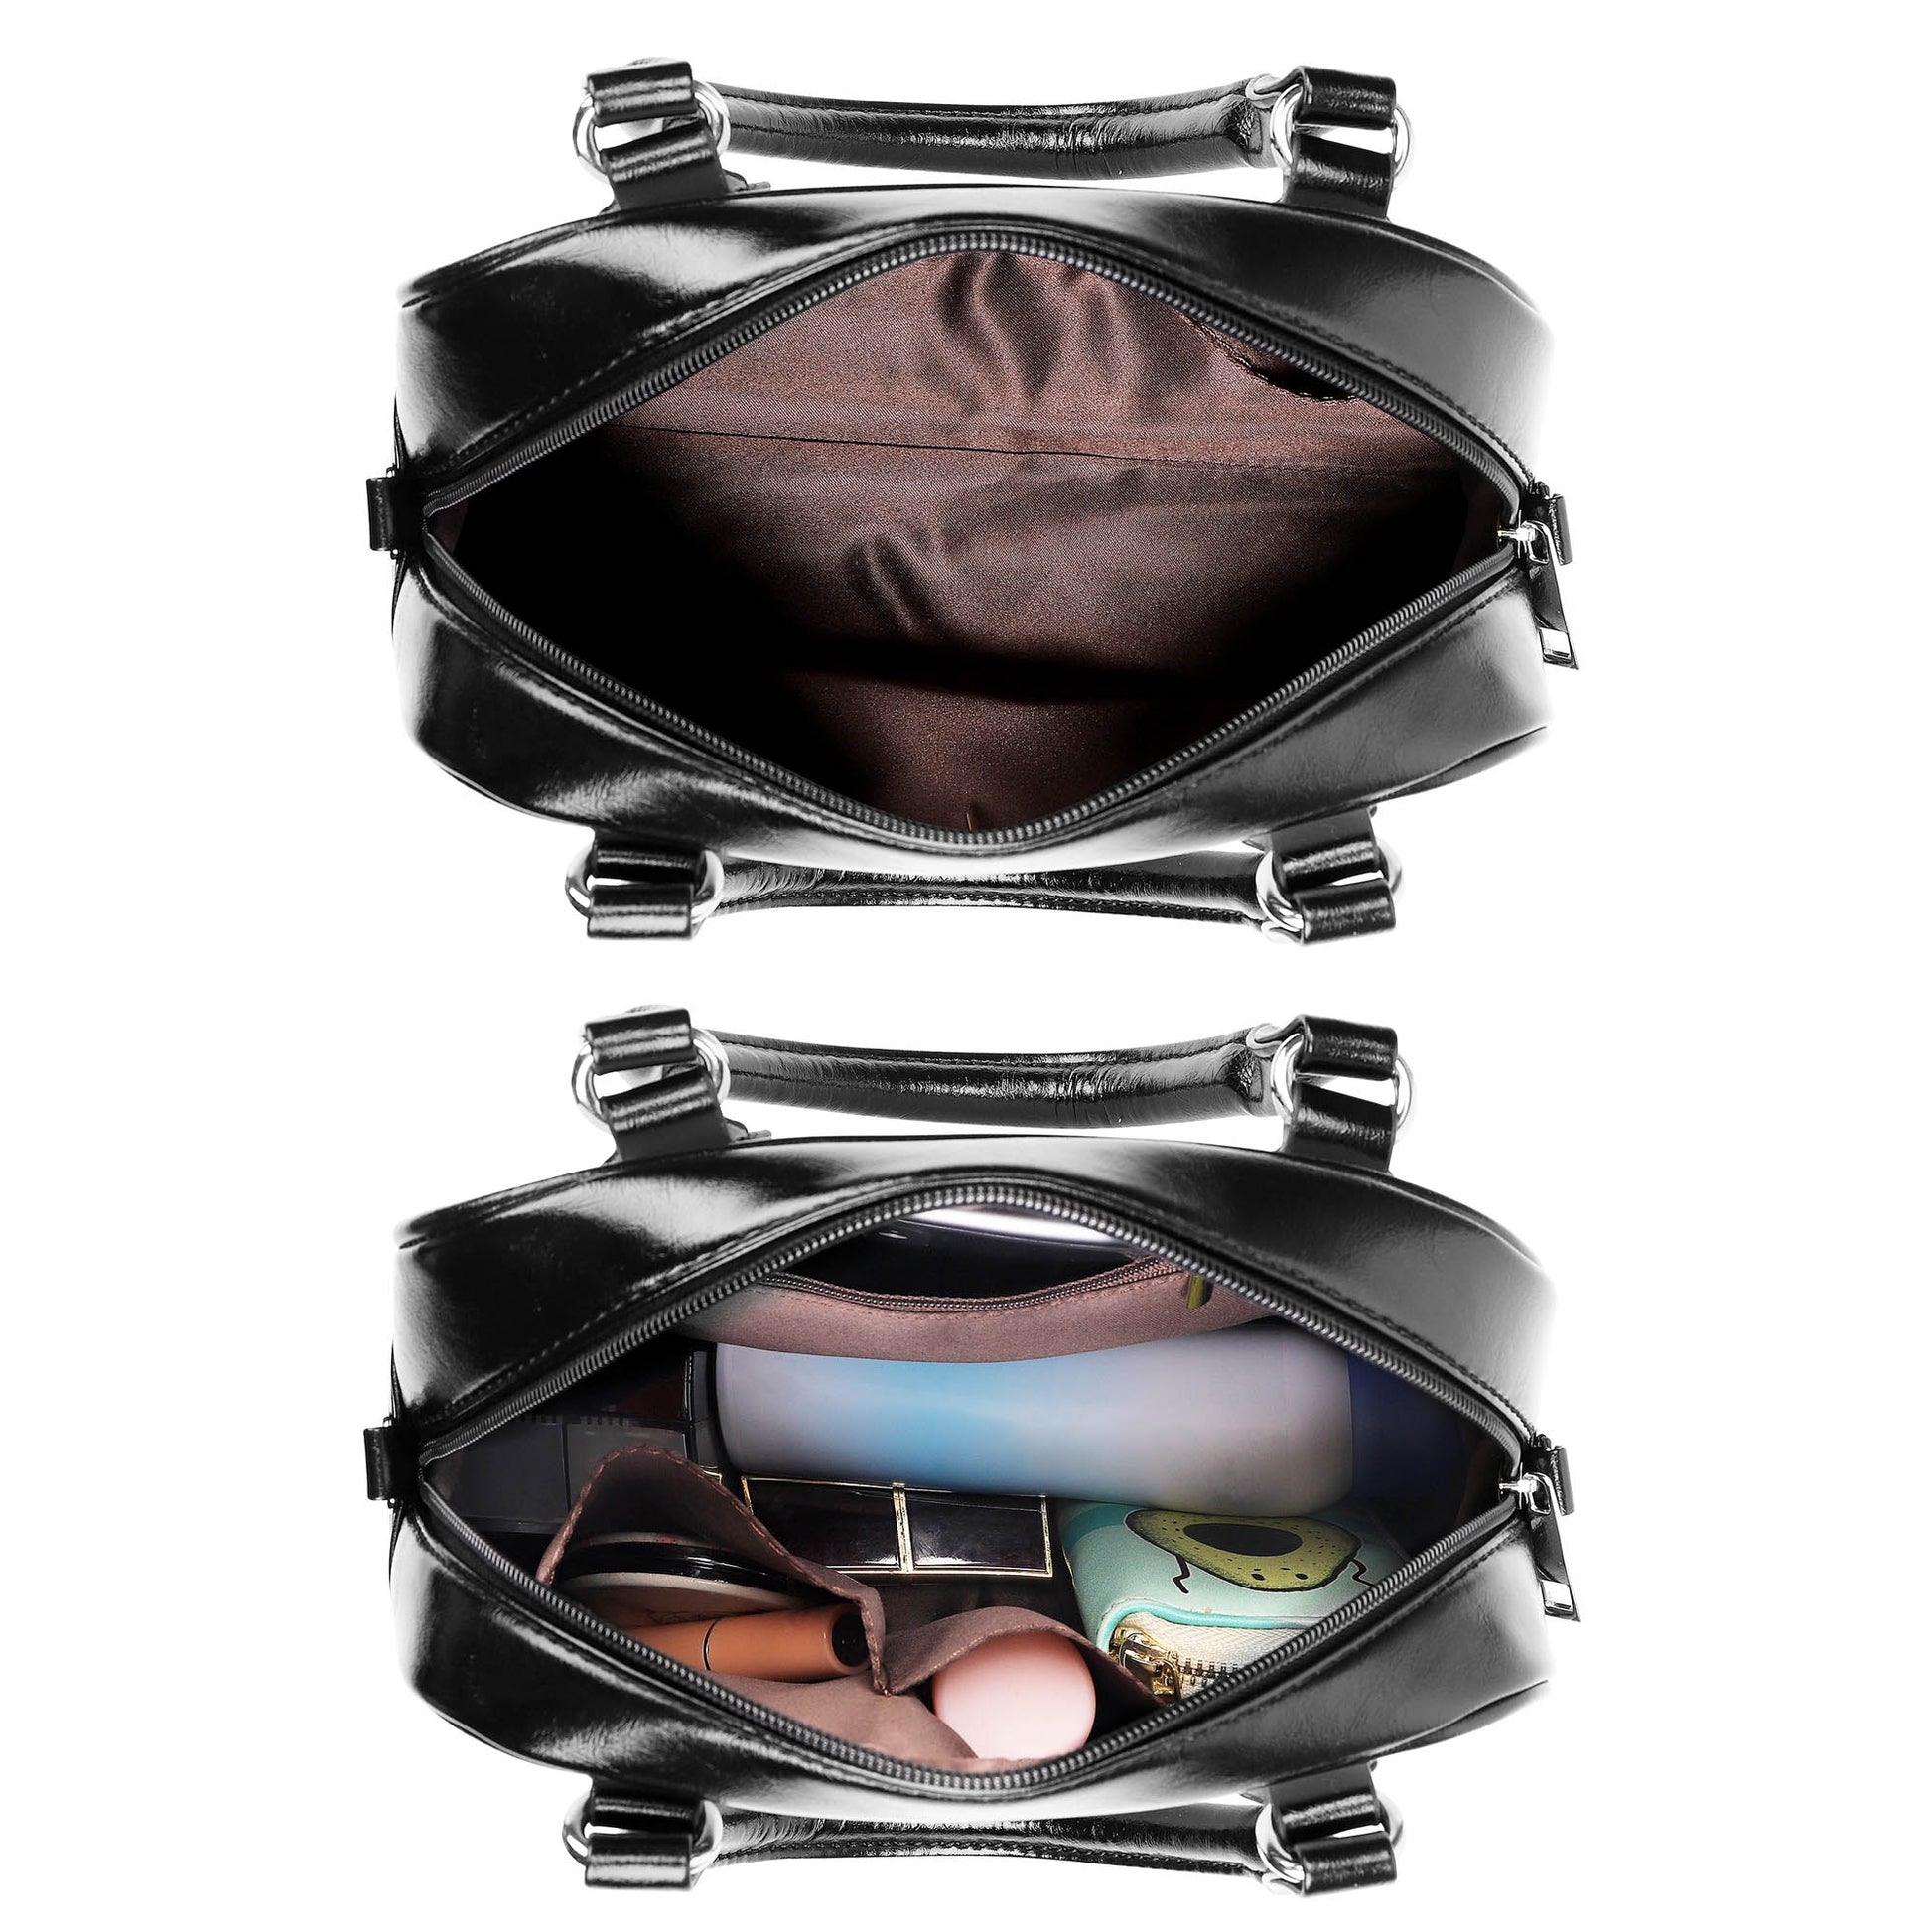 Moss Tartan Shoulder Handbags - Tartanvibesclothing